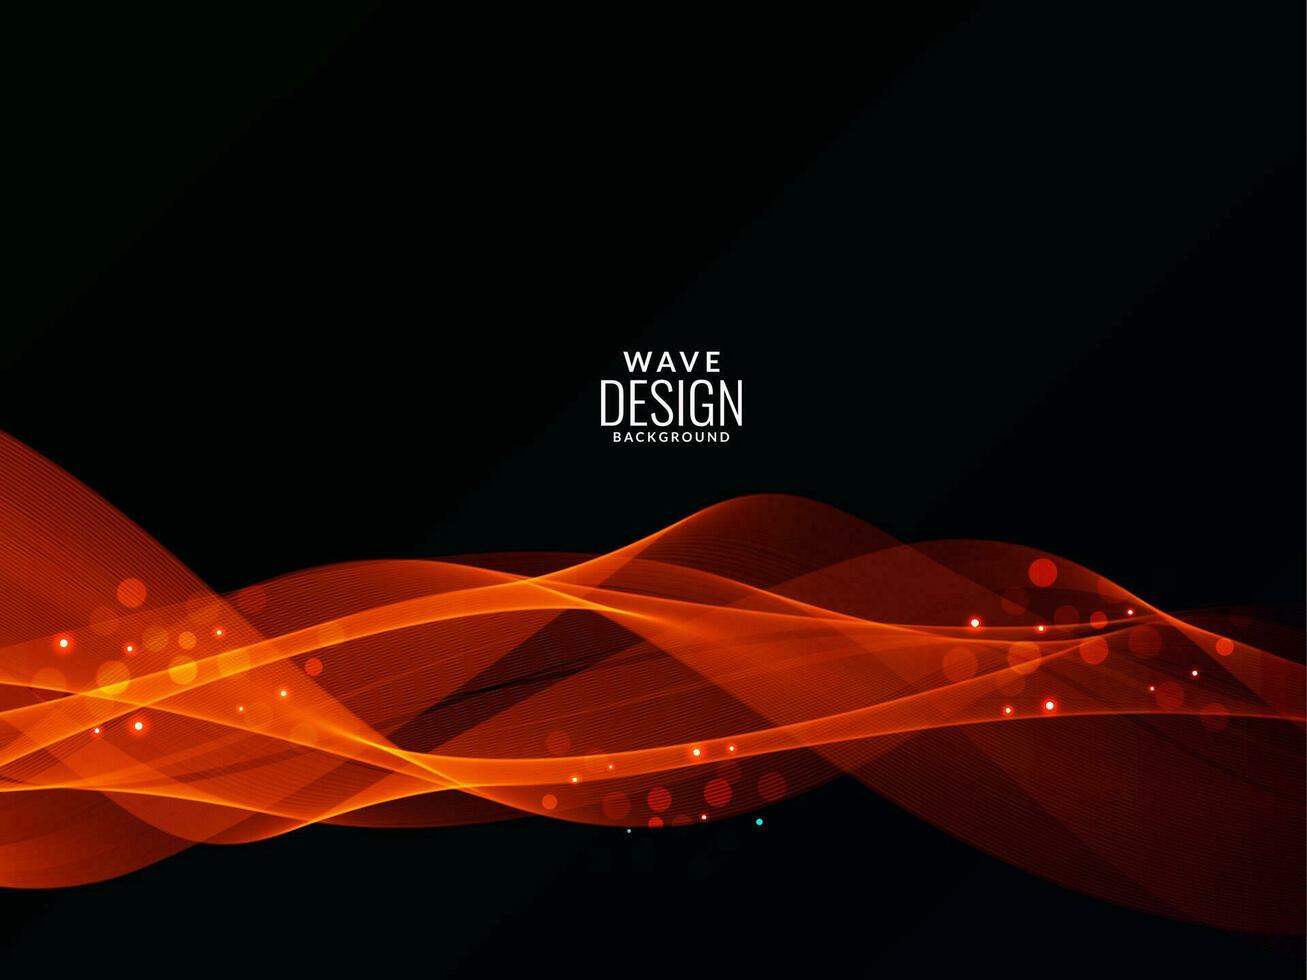 Resumen de luz naranja rojiza que fluye elegante onda moderna ilustración de fondo del modelo vector